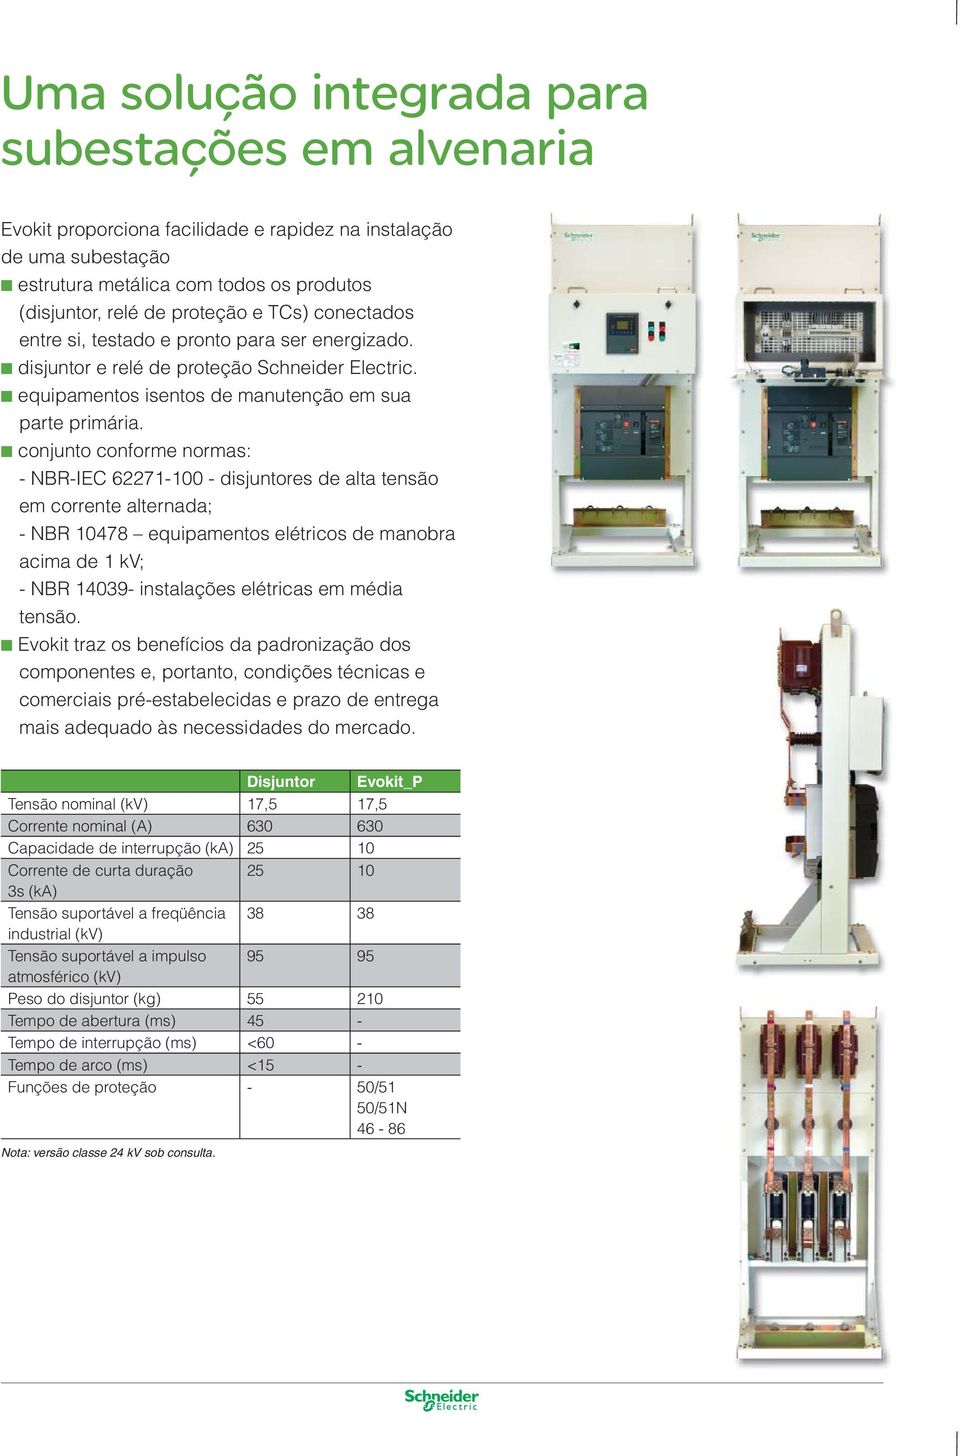 conjunto conforme normas: - NBR-IEC 62271-100 - disjuntores de alta tensão em corrente alternada; - NBR 10478 equipamentos elétricos de manobra acima de 1 kv; - NBR 14039- instalações elétricas em